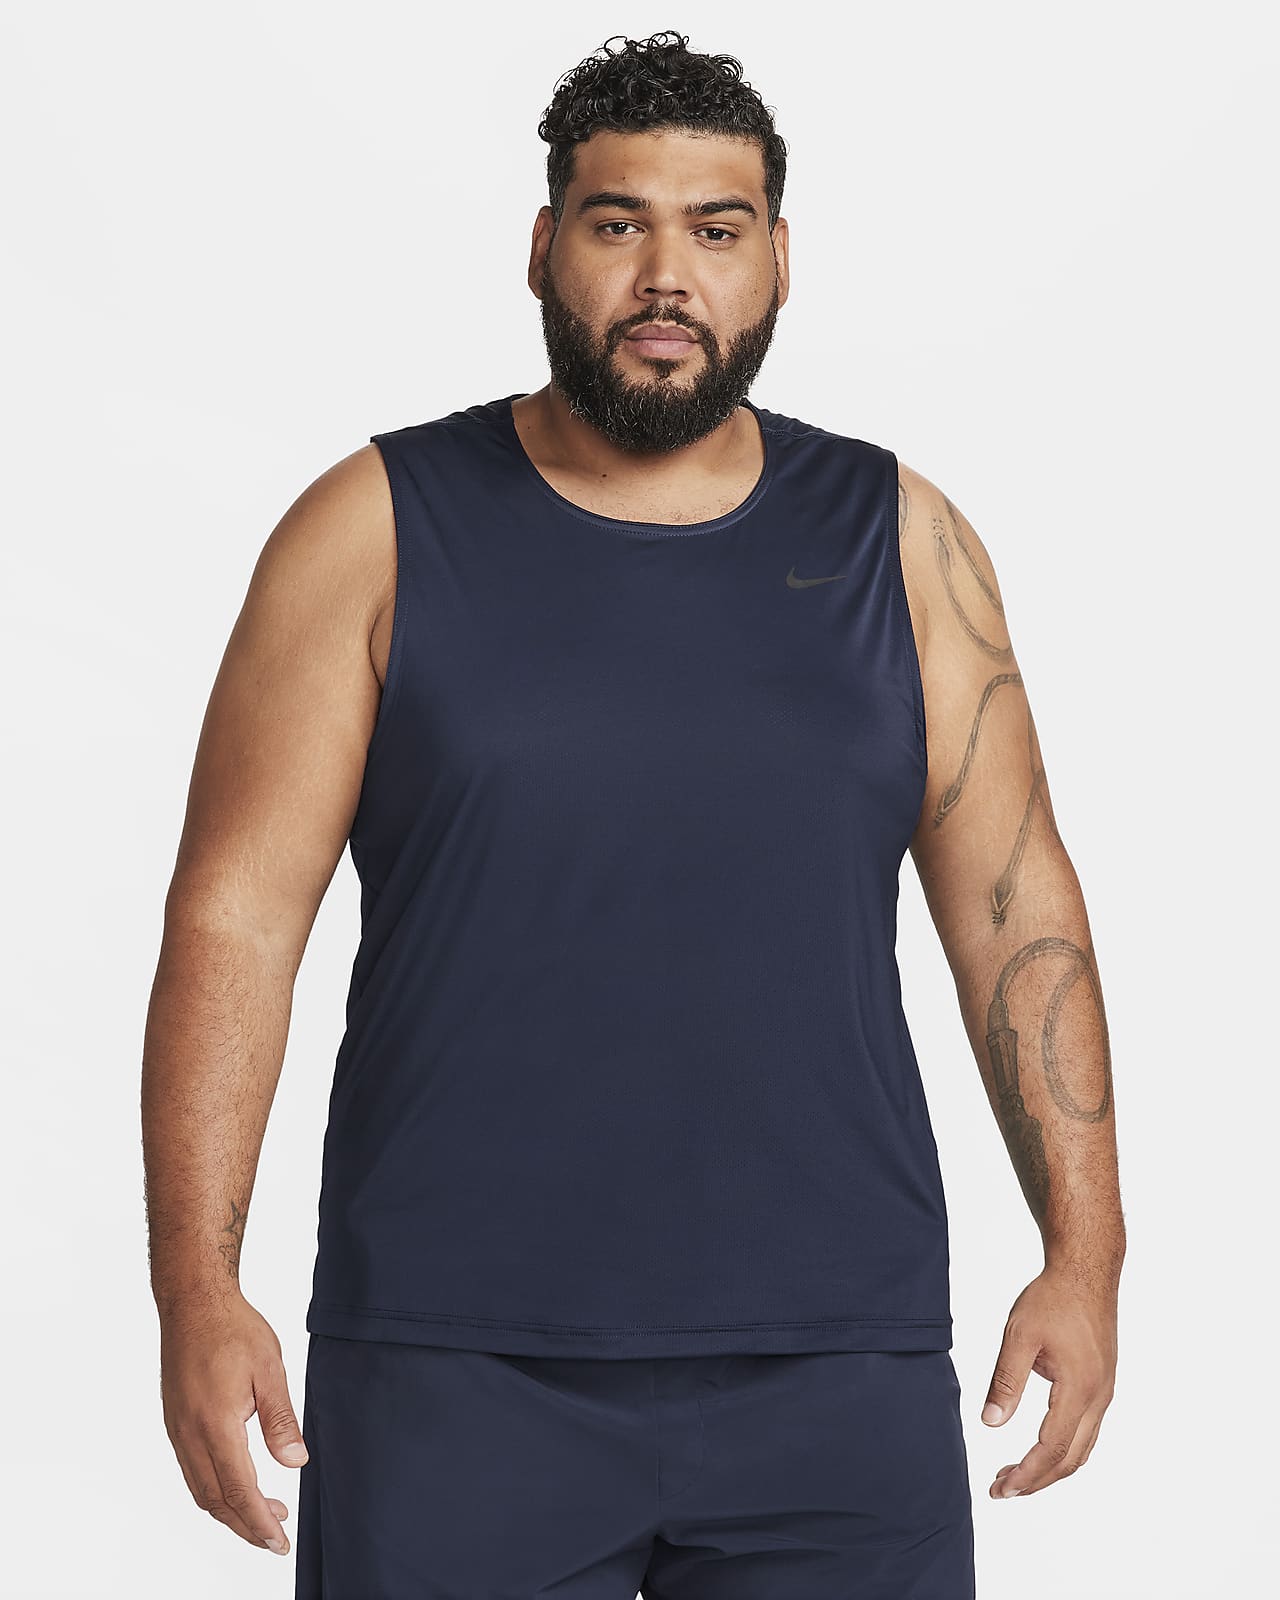 Nike Dri-fit Hooded Men's Sleeveless Training Top in Black for Men